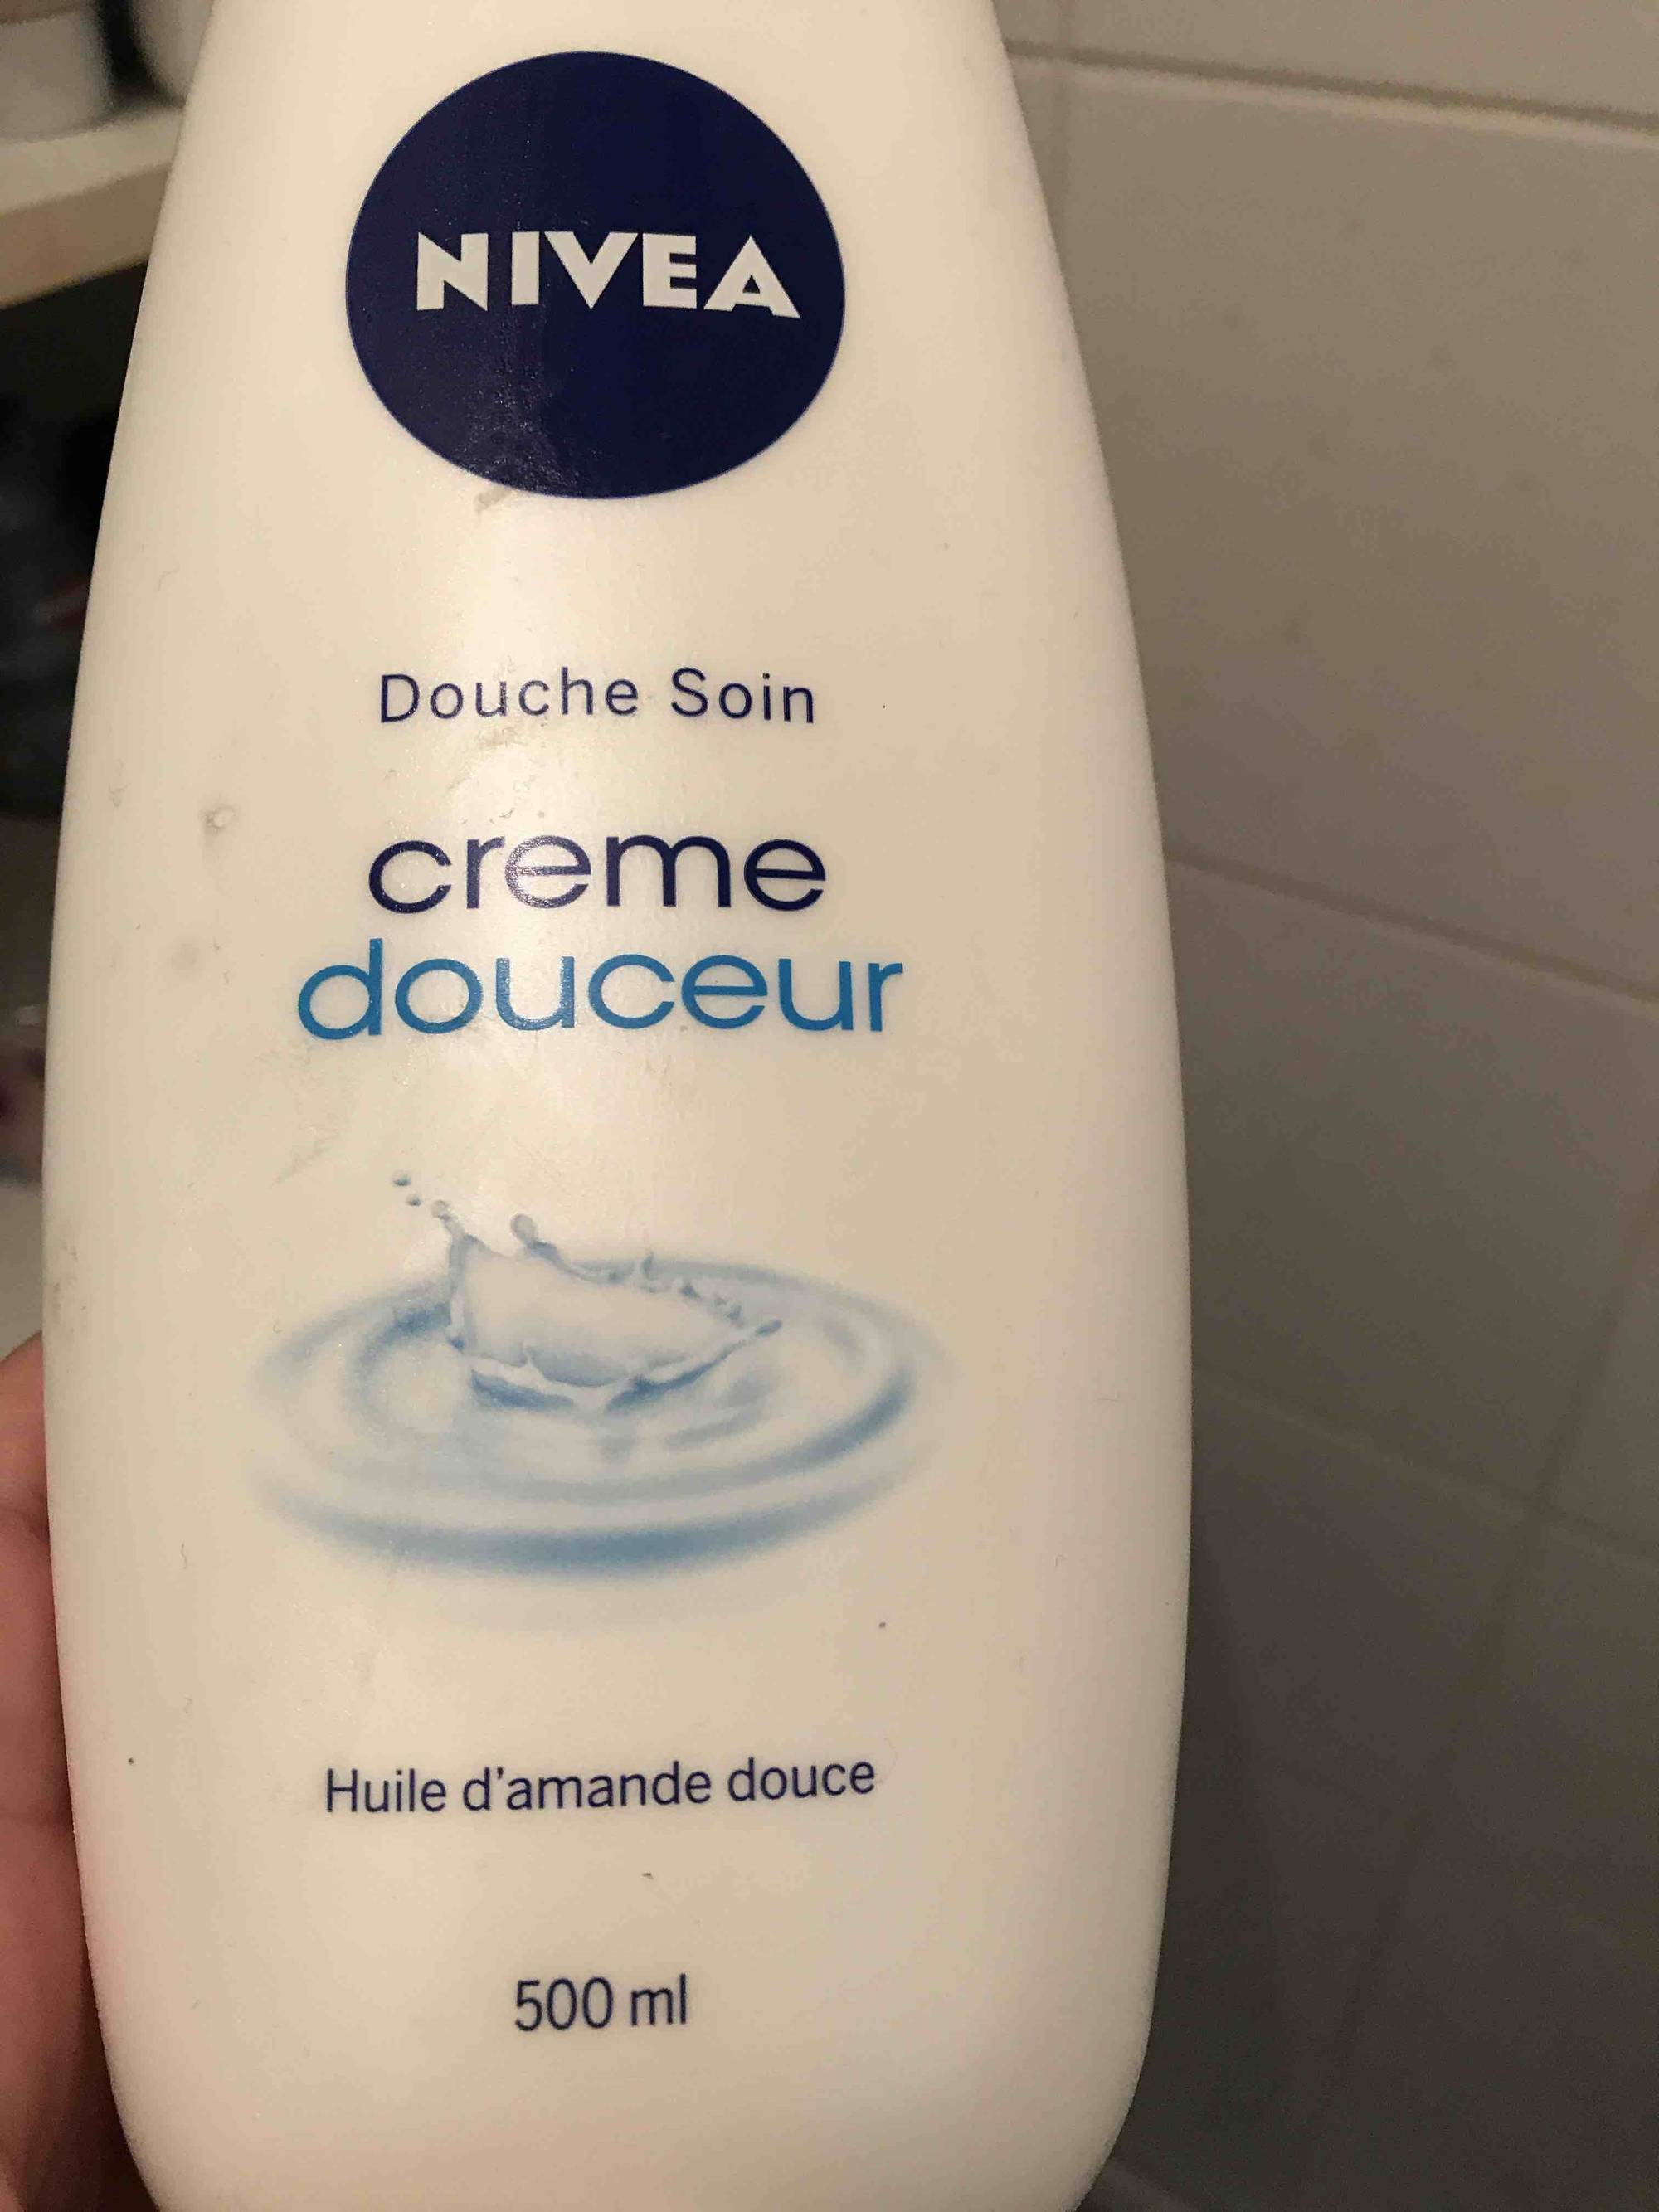 NIVEA - Crème douceur - Douche soin